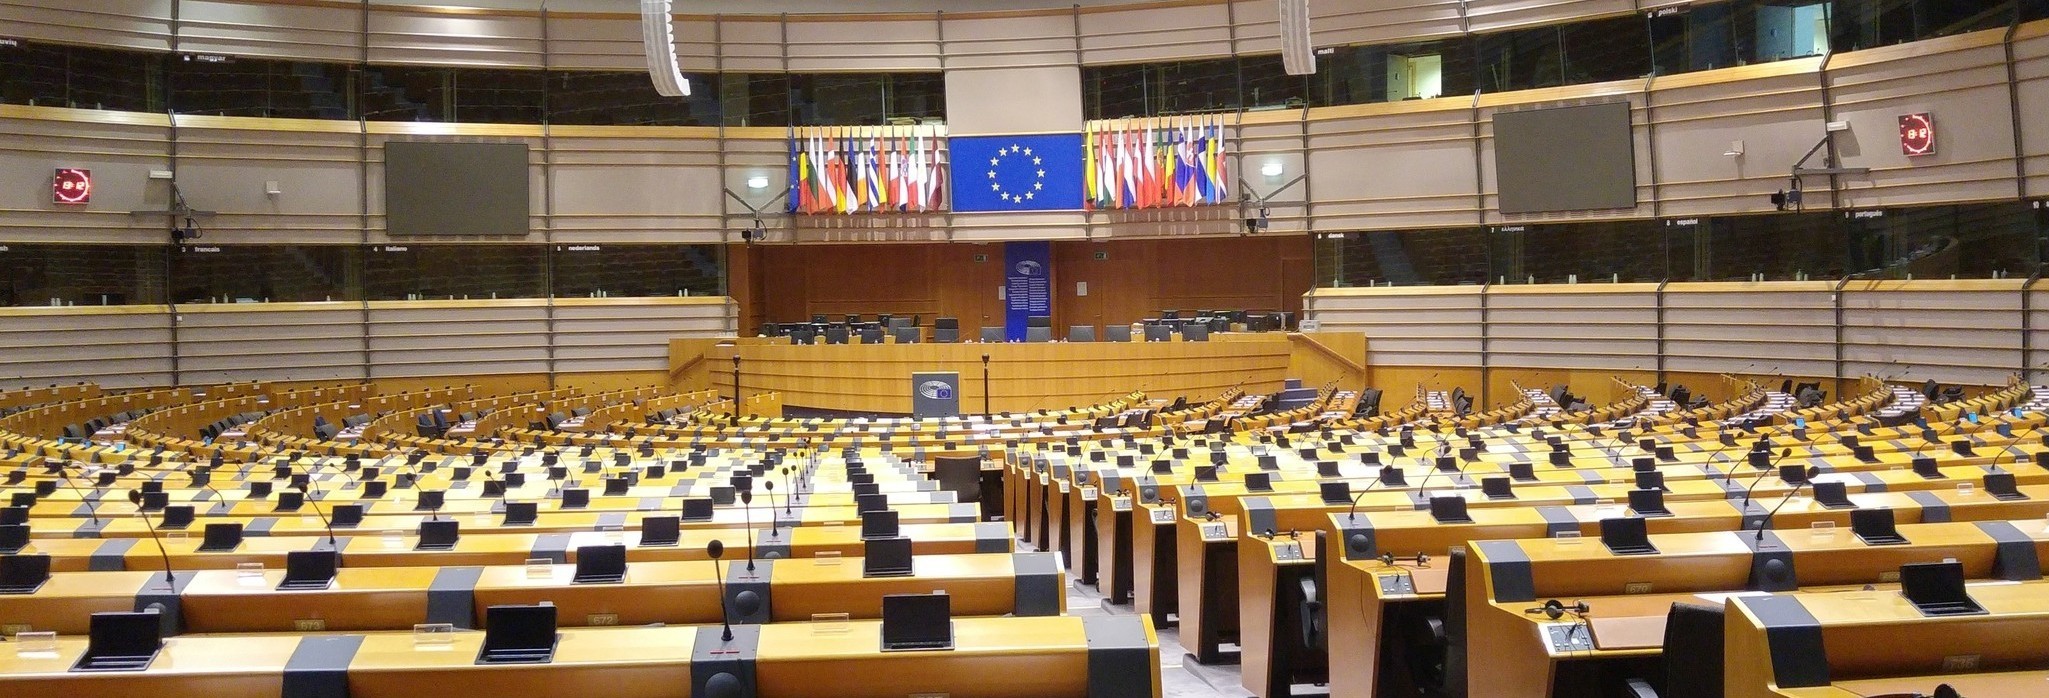 auditorium-meeting-europe-parliament-politics-eu-653219-pxhere.com